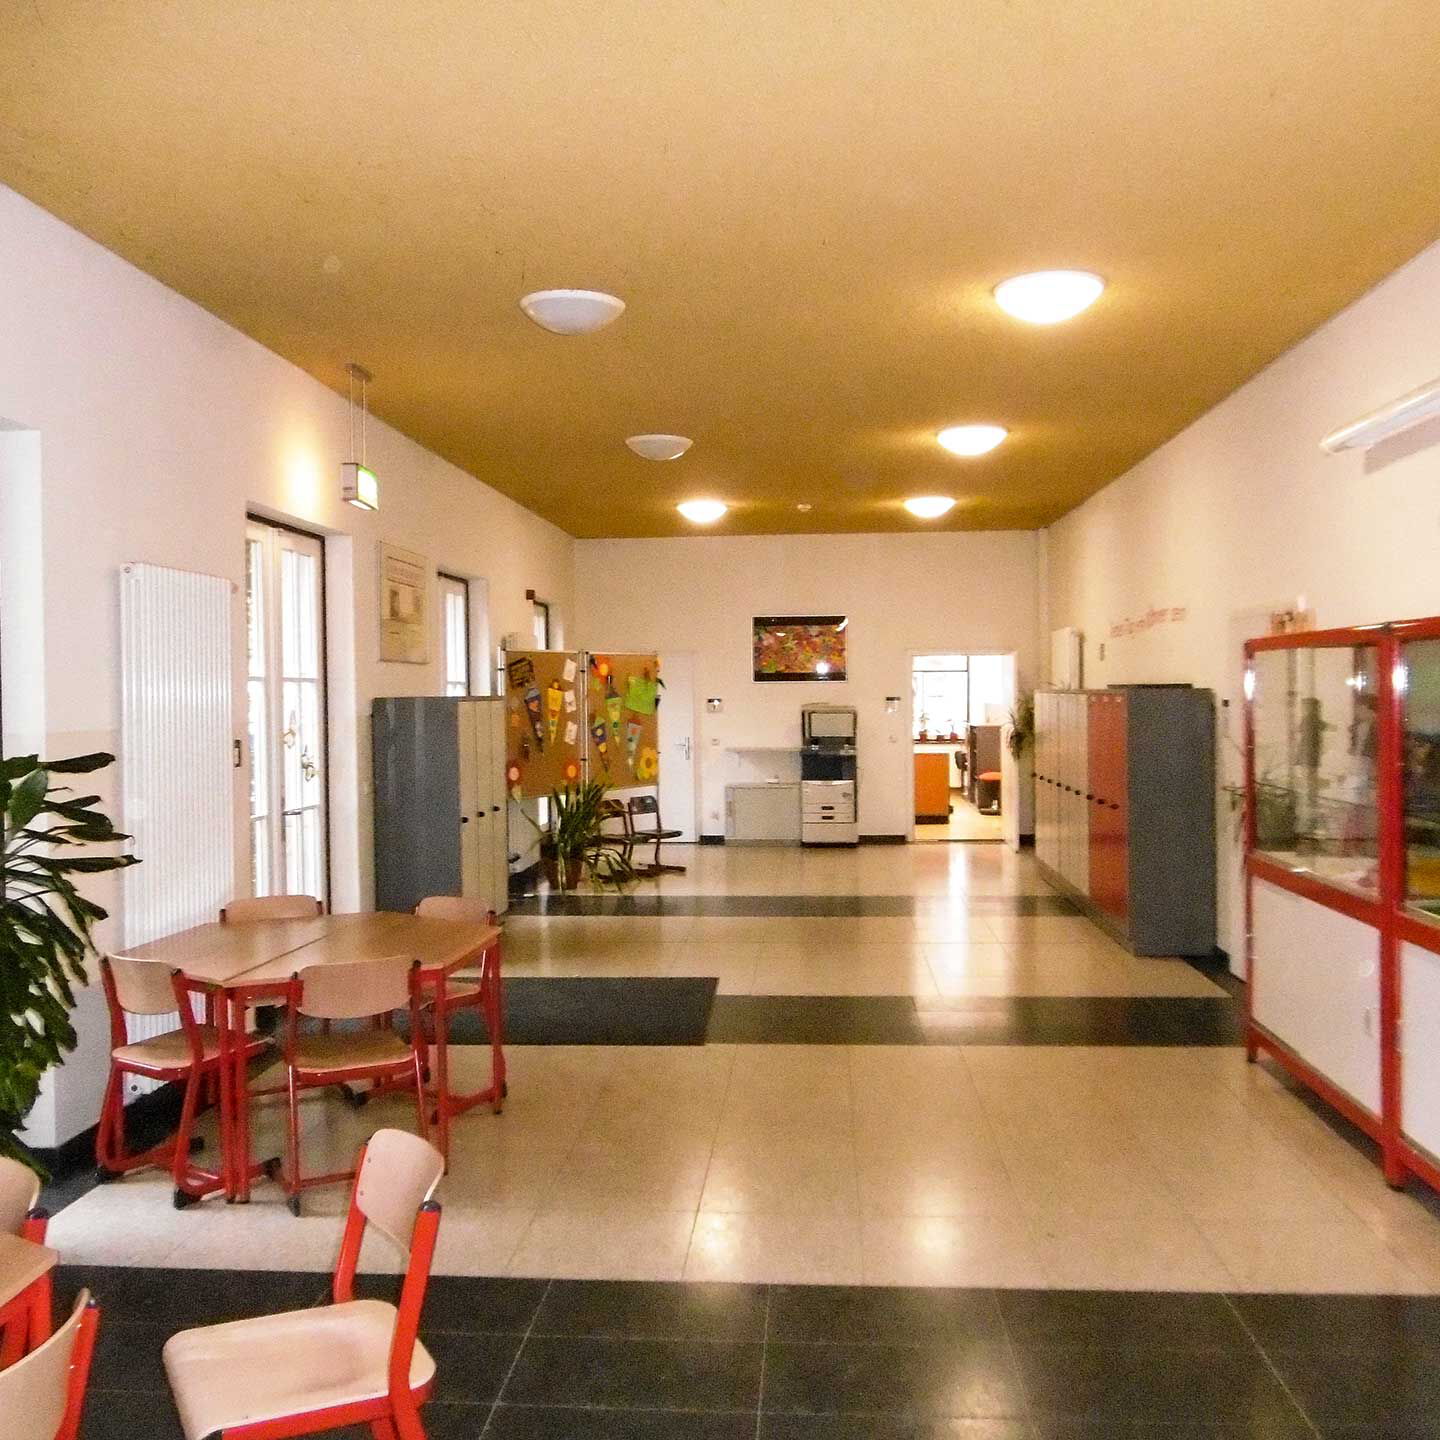 Der Foyerbereich der Grundschule mit einem langen Flur, mehreren Tischen, Schließfächern und zwei Vitrinen.